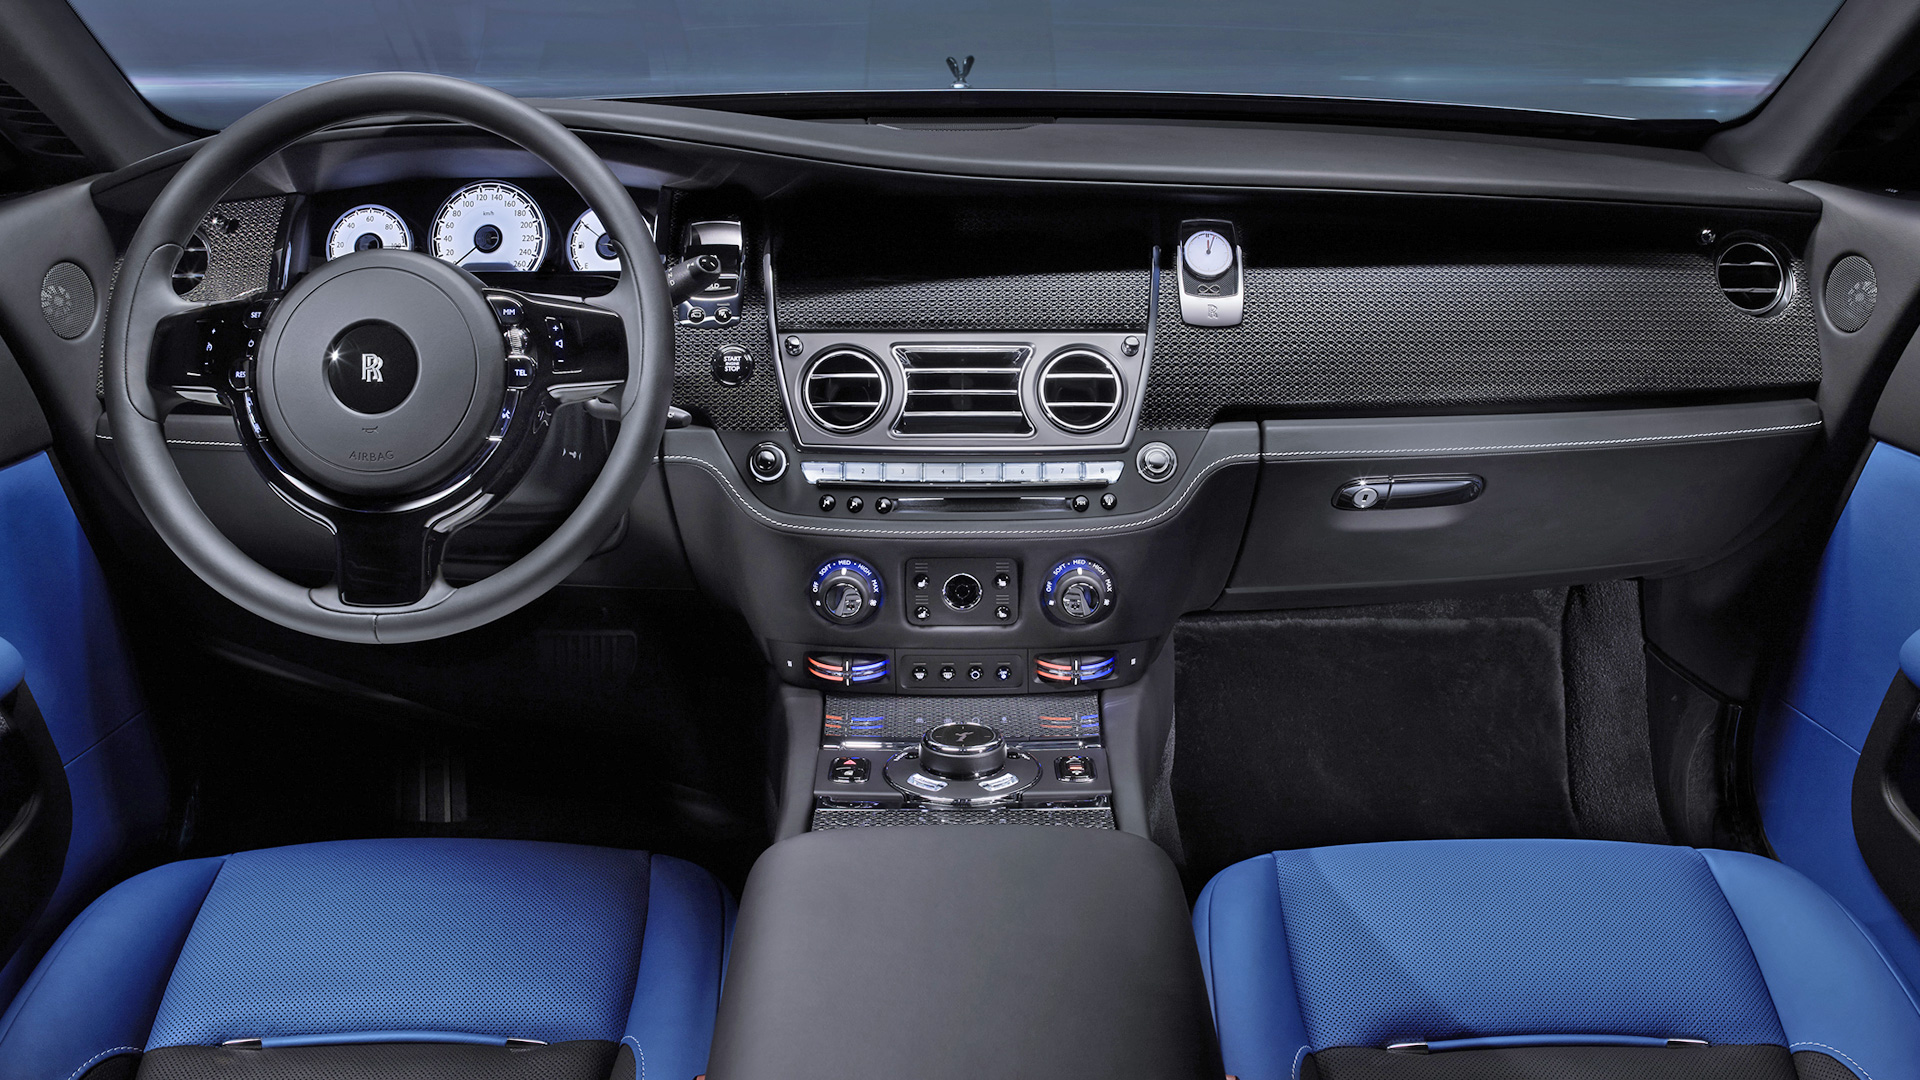 Rolls Royce Wraith 2015 STD Interior Car Photos - Overdrive